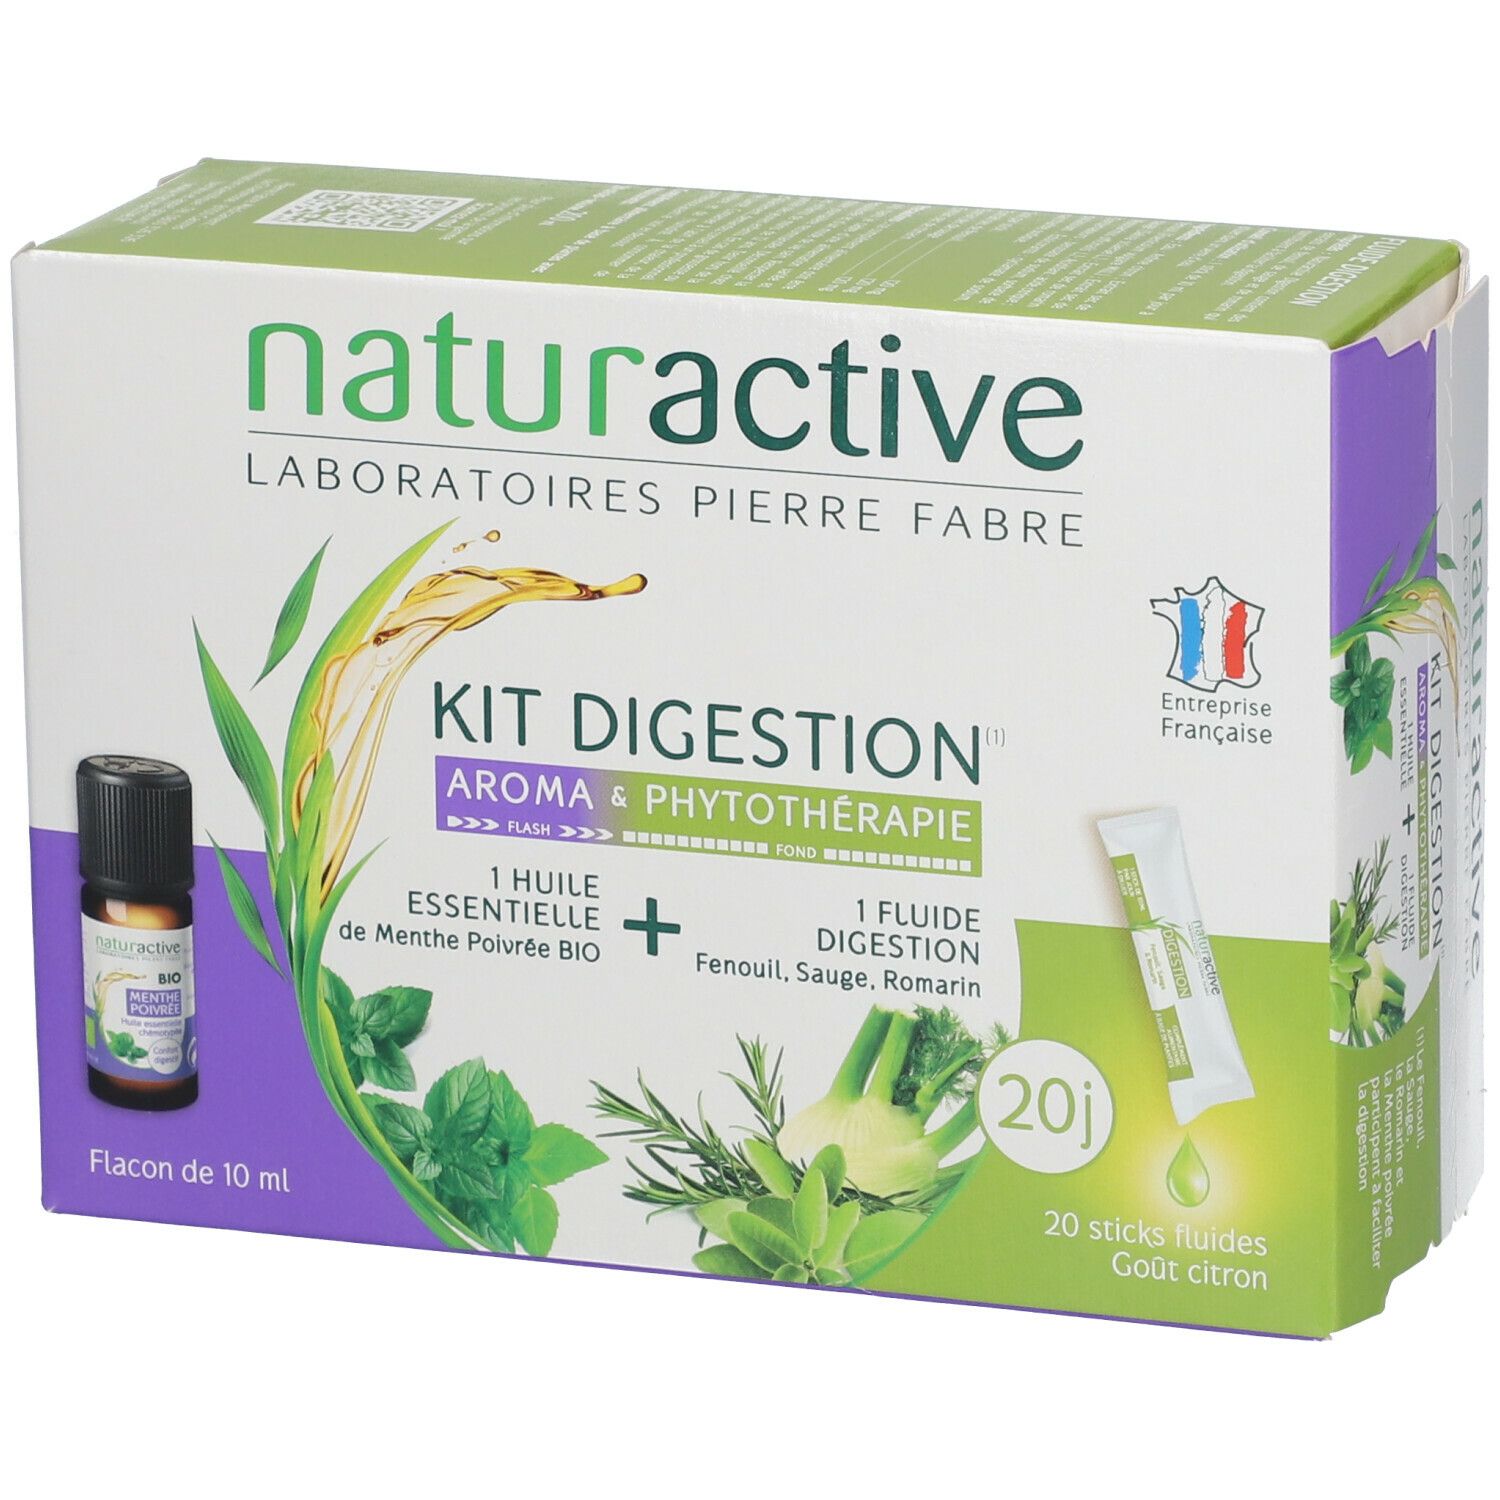 Naturactive Kit Digestion Stick fluide + Huile essentielle de Menthe poivrée BIO